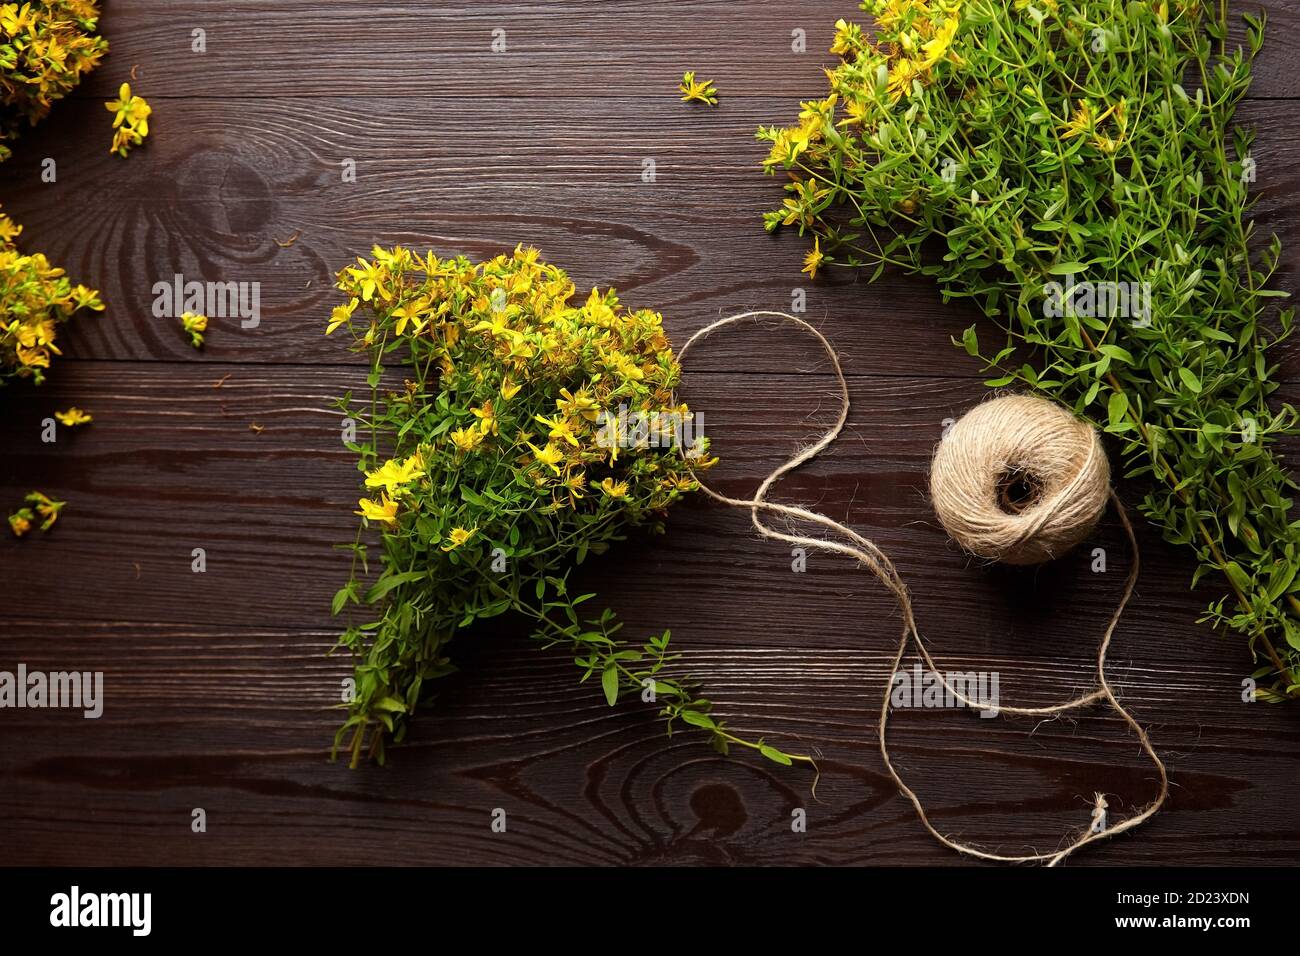 Hypericum perforatum oder johanniskraut Ernte - Blumen Bund mit Seil gebunden, Holzhintergrund, flach legen Stockfoto